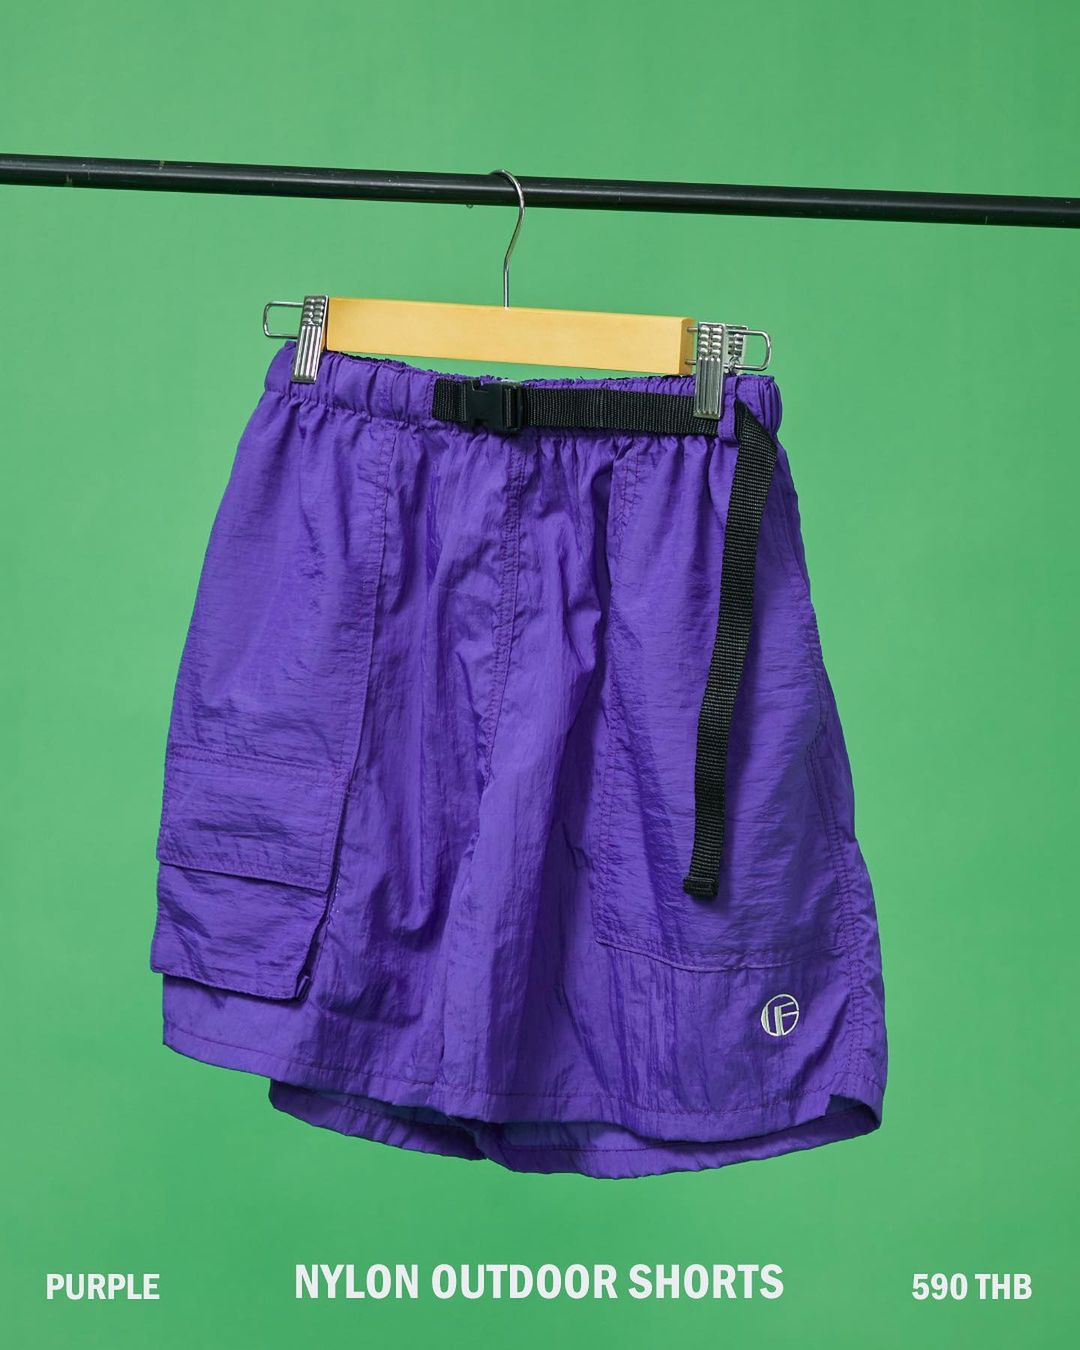 GFT Nylon Outdoor Shorts (Purple) 